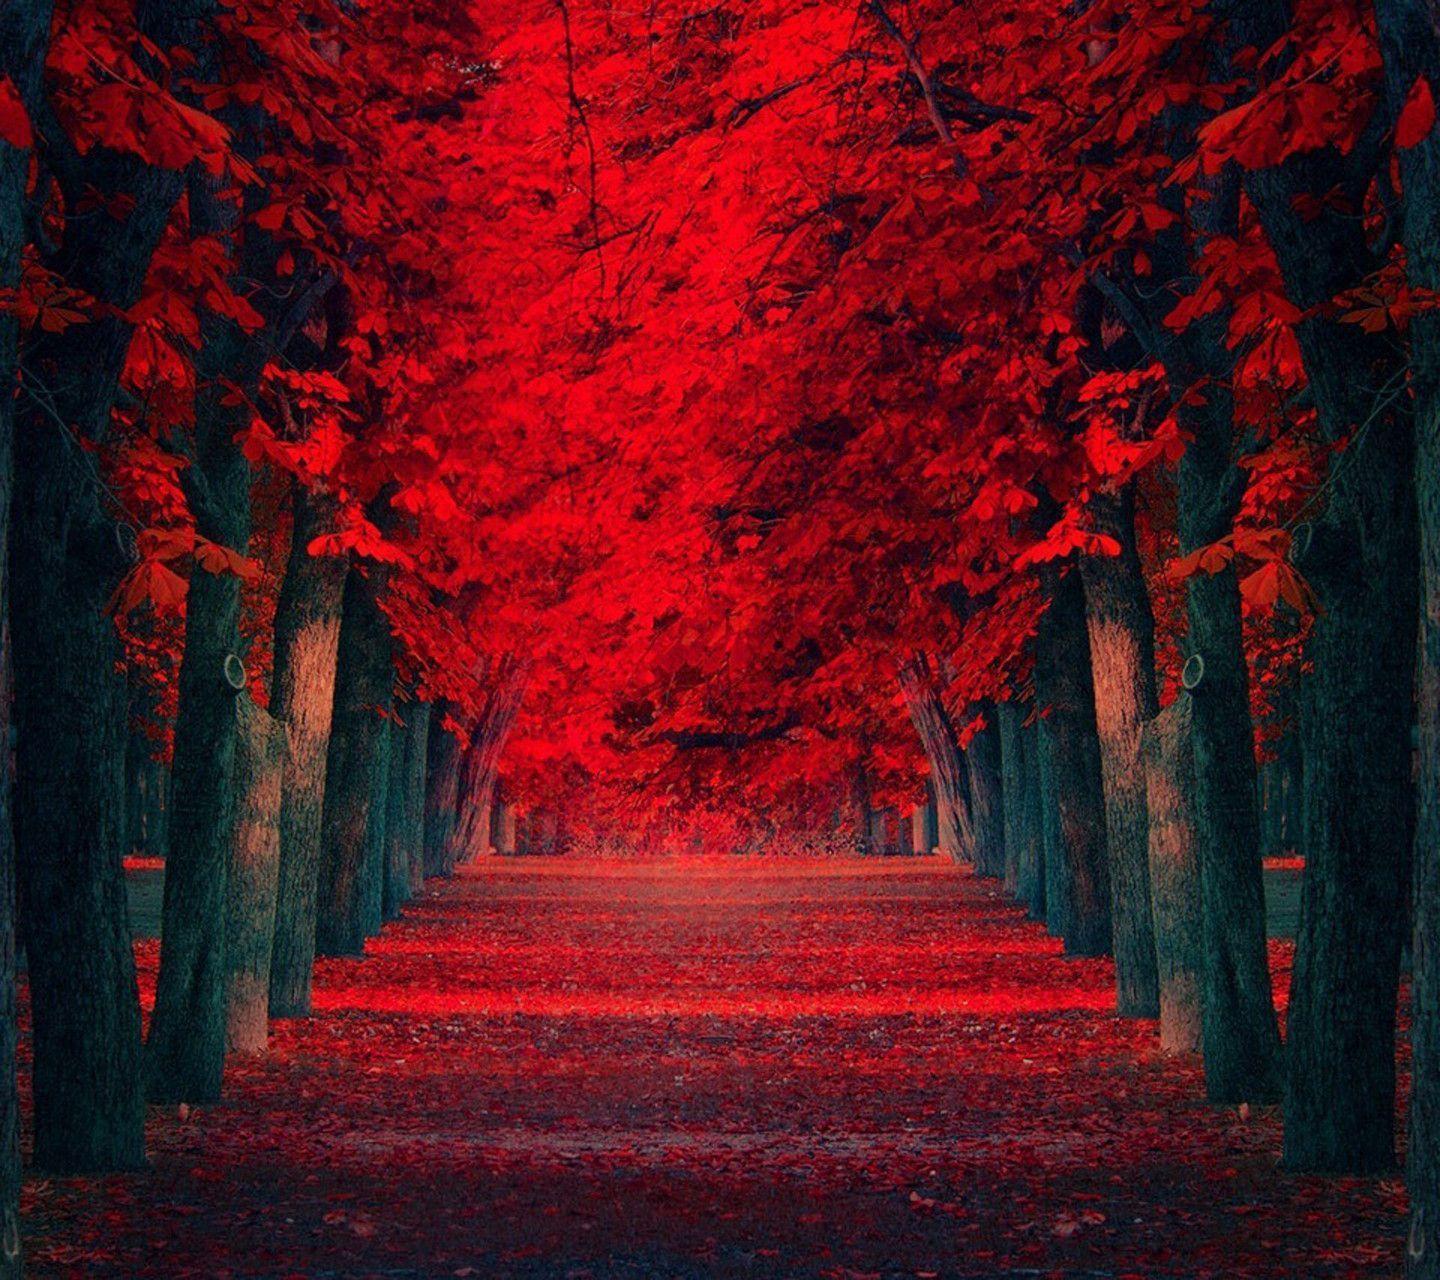 Hình nền Red Tree sẽ làm cho không gian của bạn thêm phần sang trọng và hoàn hảo. Nhìn vào những cây đang bừng sáng trong vẻ đẹp rực rỡ của màu đỏ, bạn sẽ có cảm giác như mình đang đứng giữa một thiên nhiên tươi đẹp, tràn đầy sức sống. Hãy dành một chút thời gian để ngắm nhìn và thưởng thức hình nền Red Tree đẹp nhất.